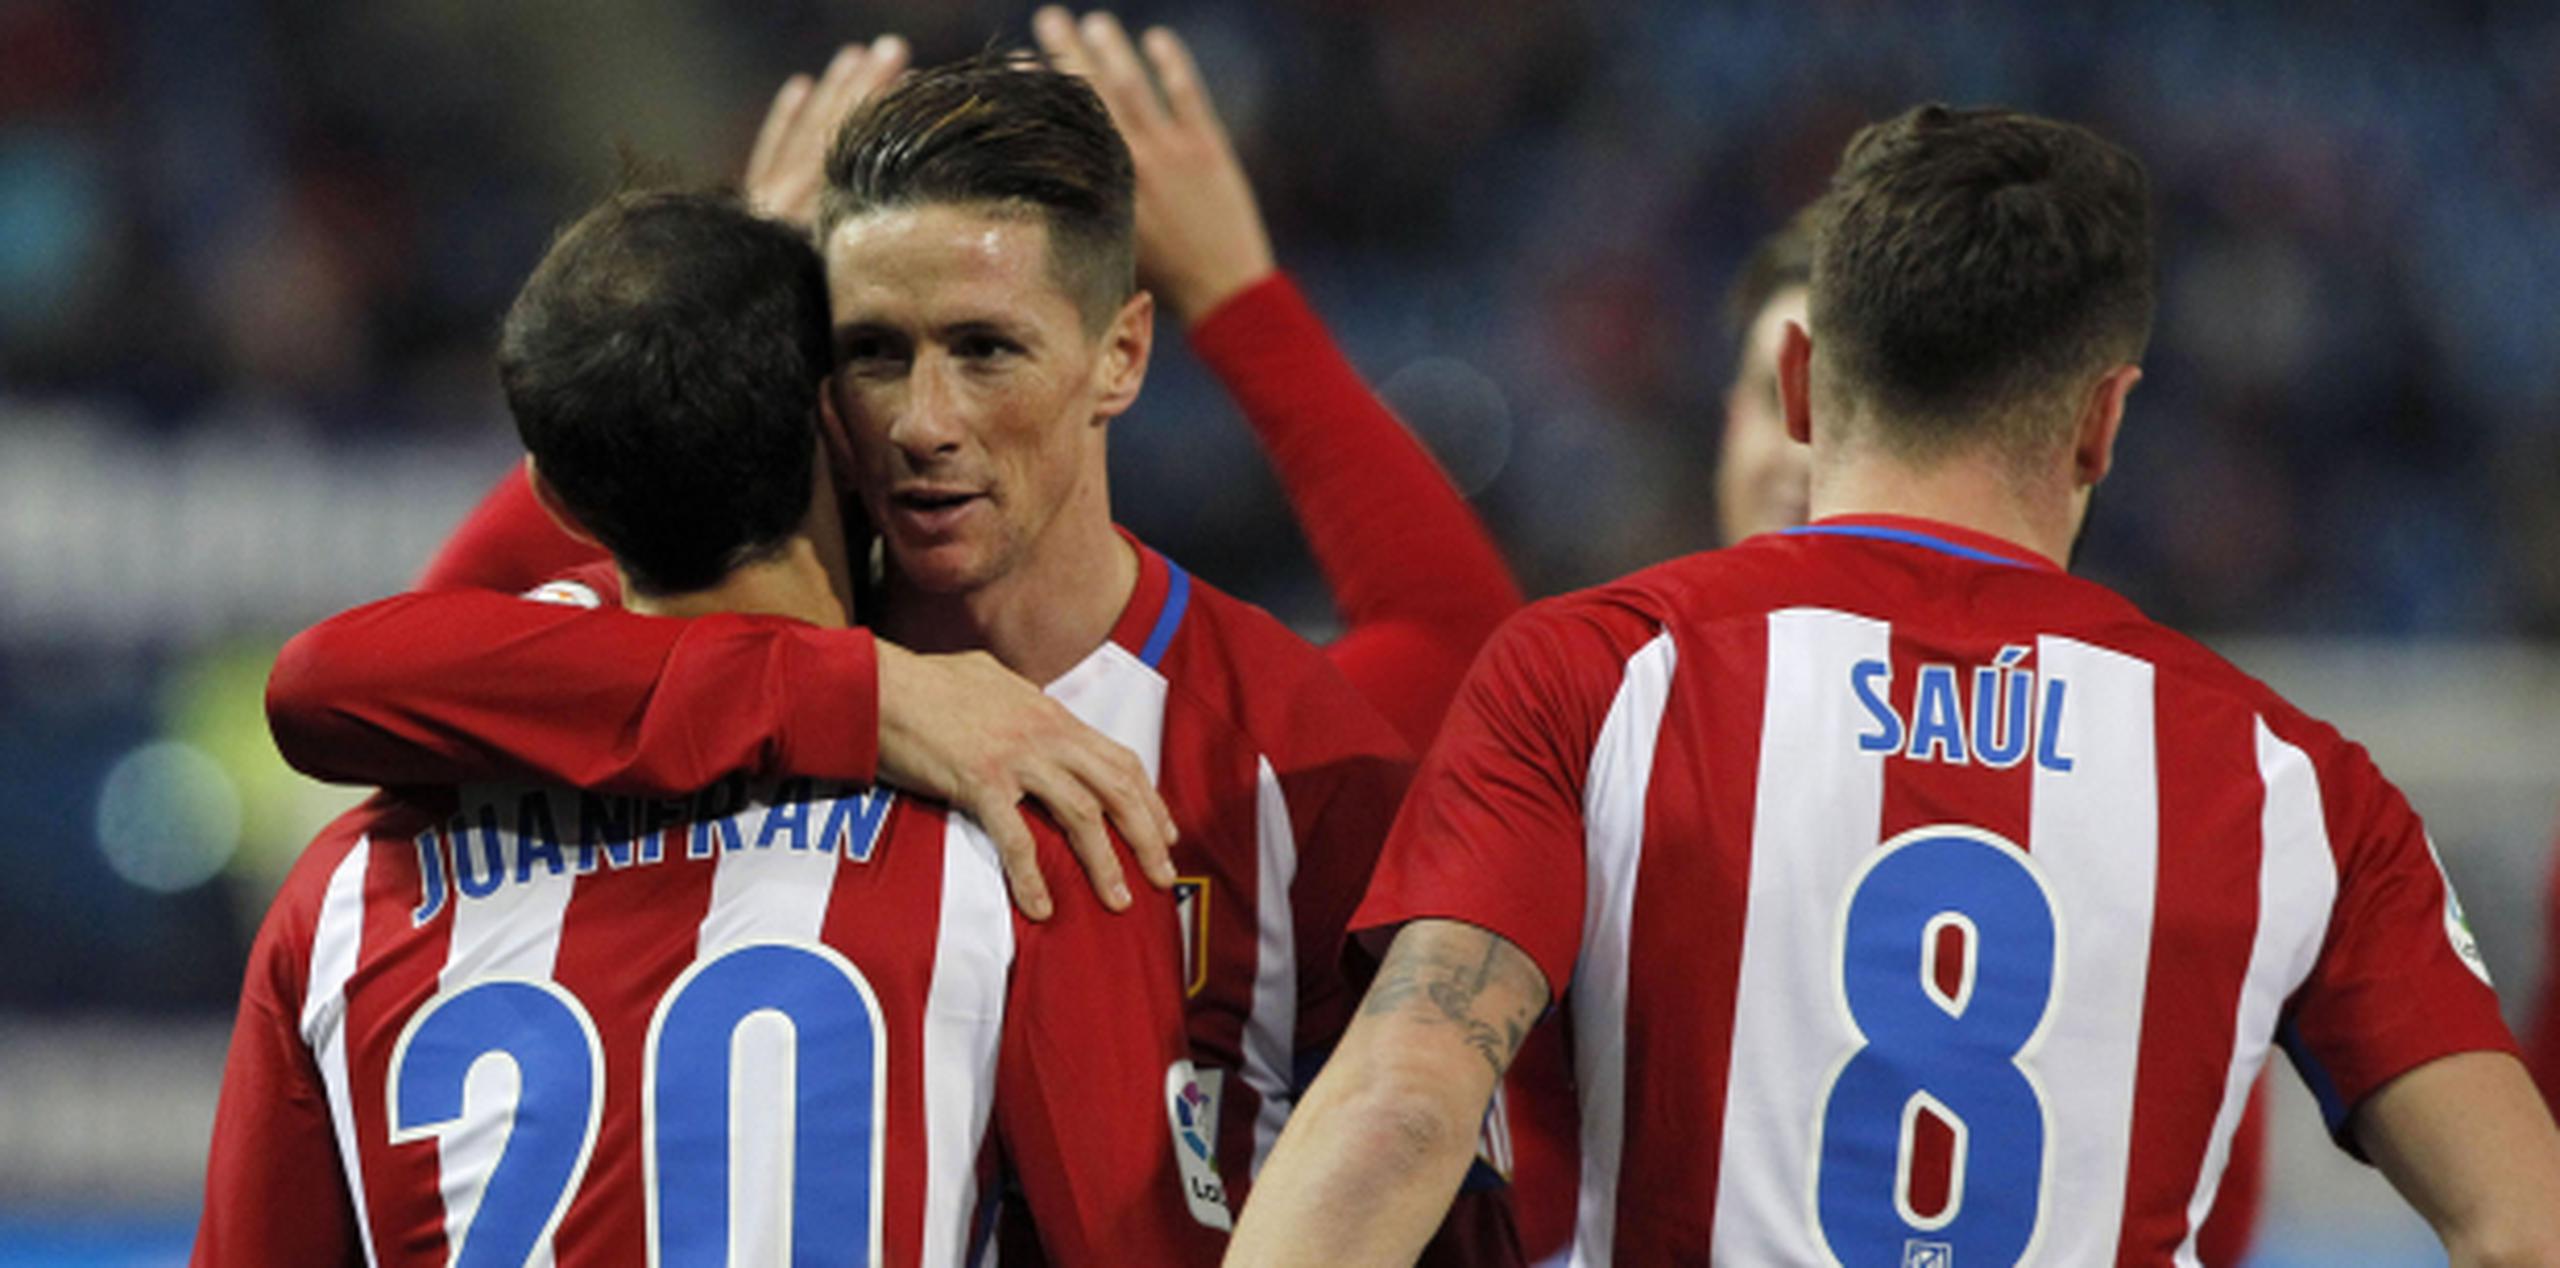 El delantero del Atlético de Madrid Fernando Torres  celebra con sus compañeros Juanfran y Saúl Ñíguez el gol marcado ante el Guijuelo. (Agencia EFE)